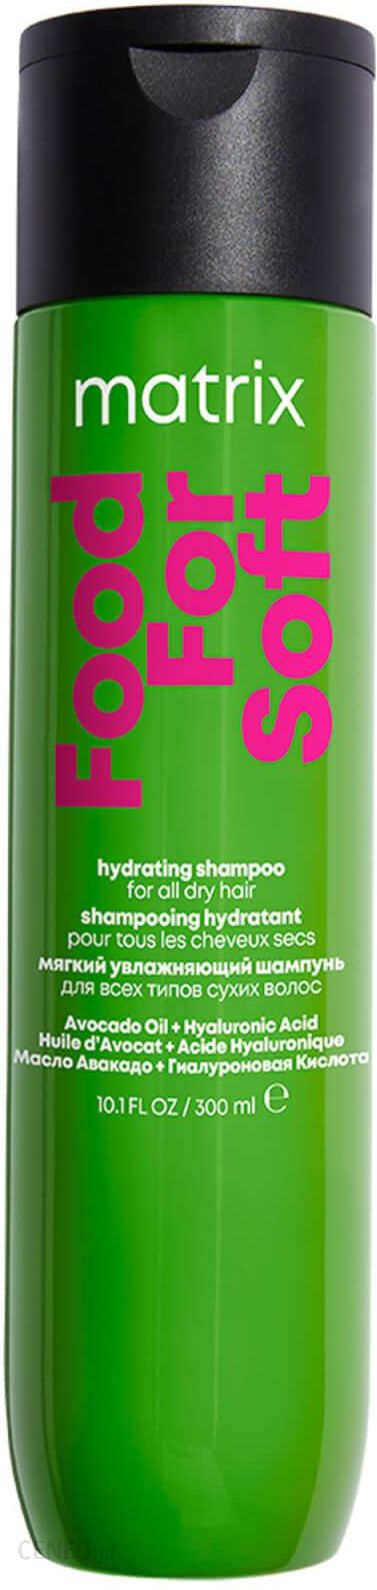 szampon matrix nawilżający